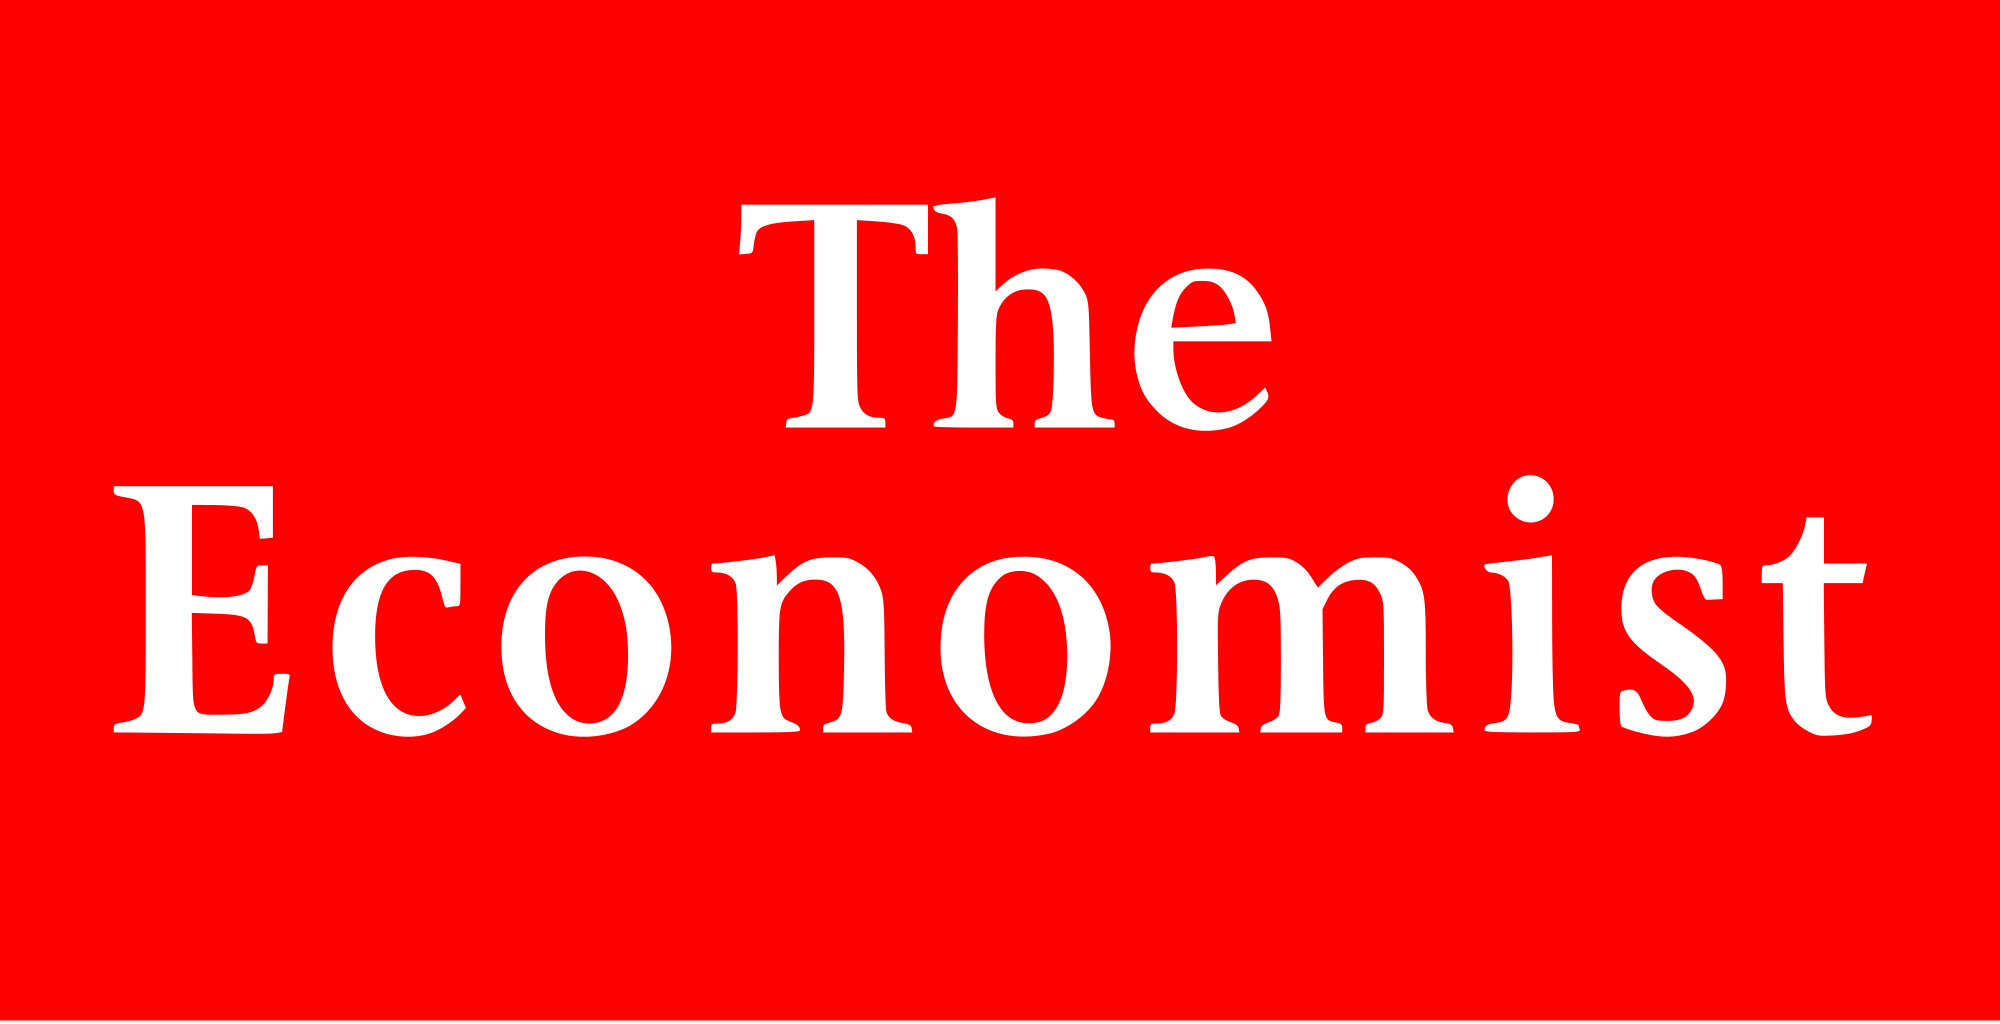 Economist.png